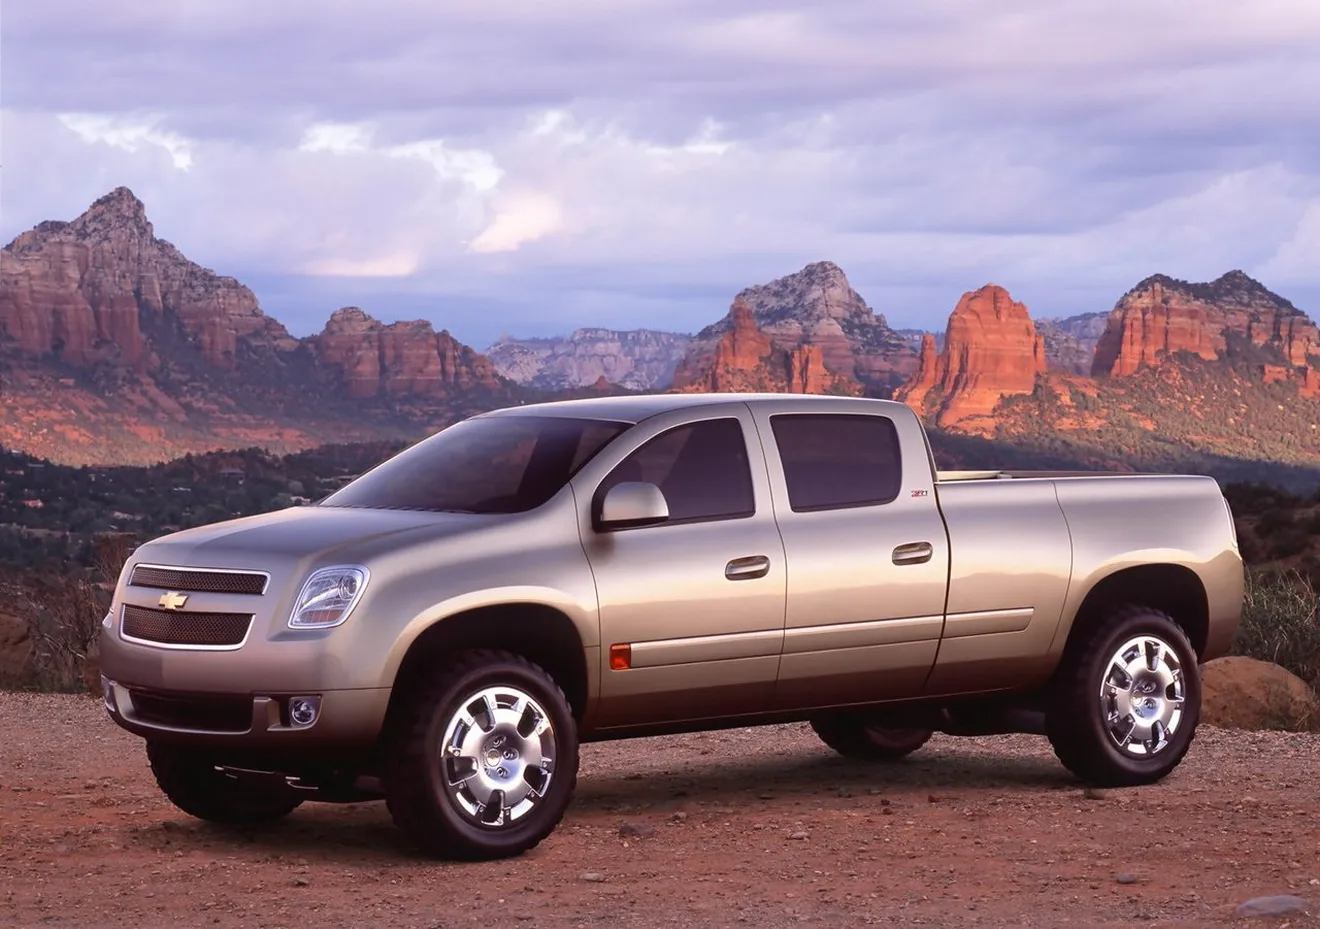 Chevrolet registra el nombre Cheyenne y se desatan los rumores sobre un nuevo pick-up